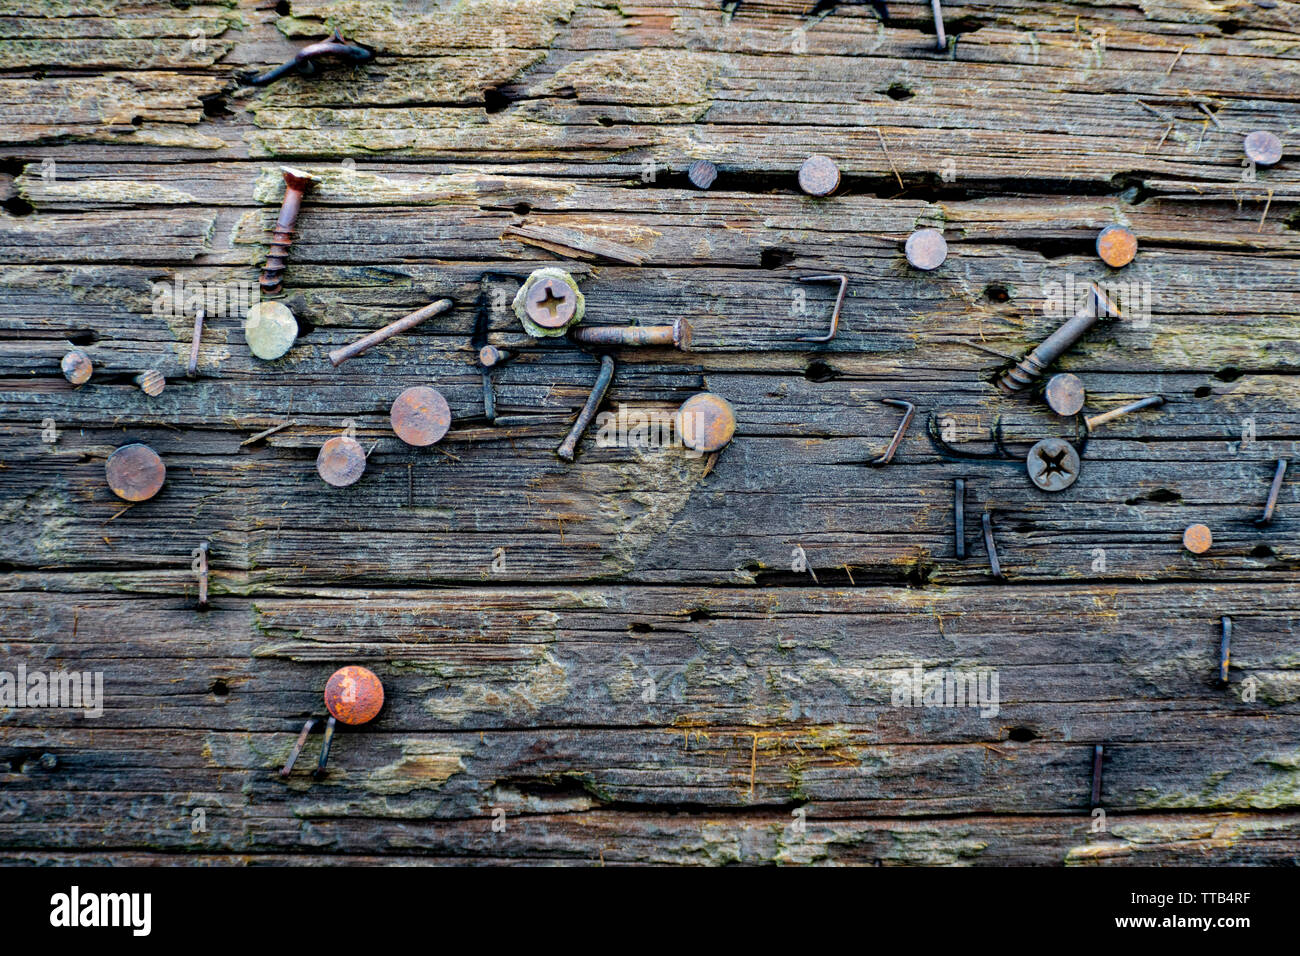 Gros plan d'un poteau téléphonique horizontal en bois avec clous, vis et agrafes rouillés fixés dans des endroits aléatoires. Banque D'Images